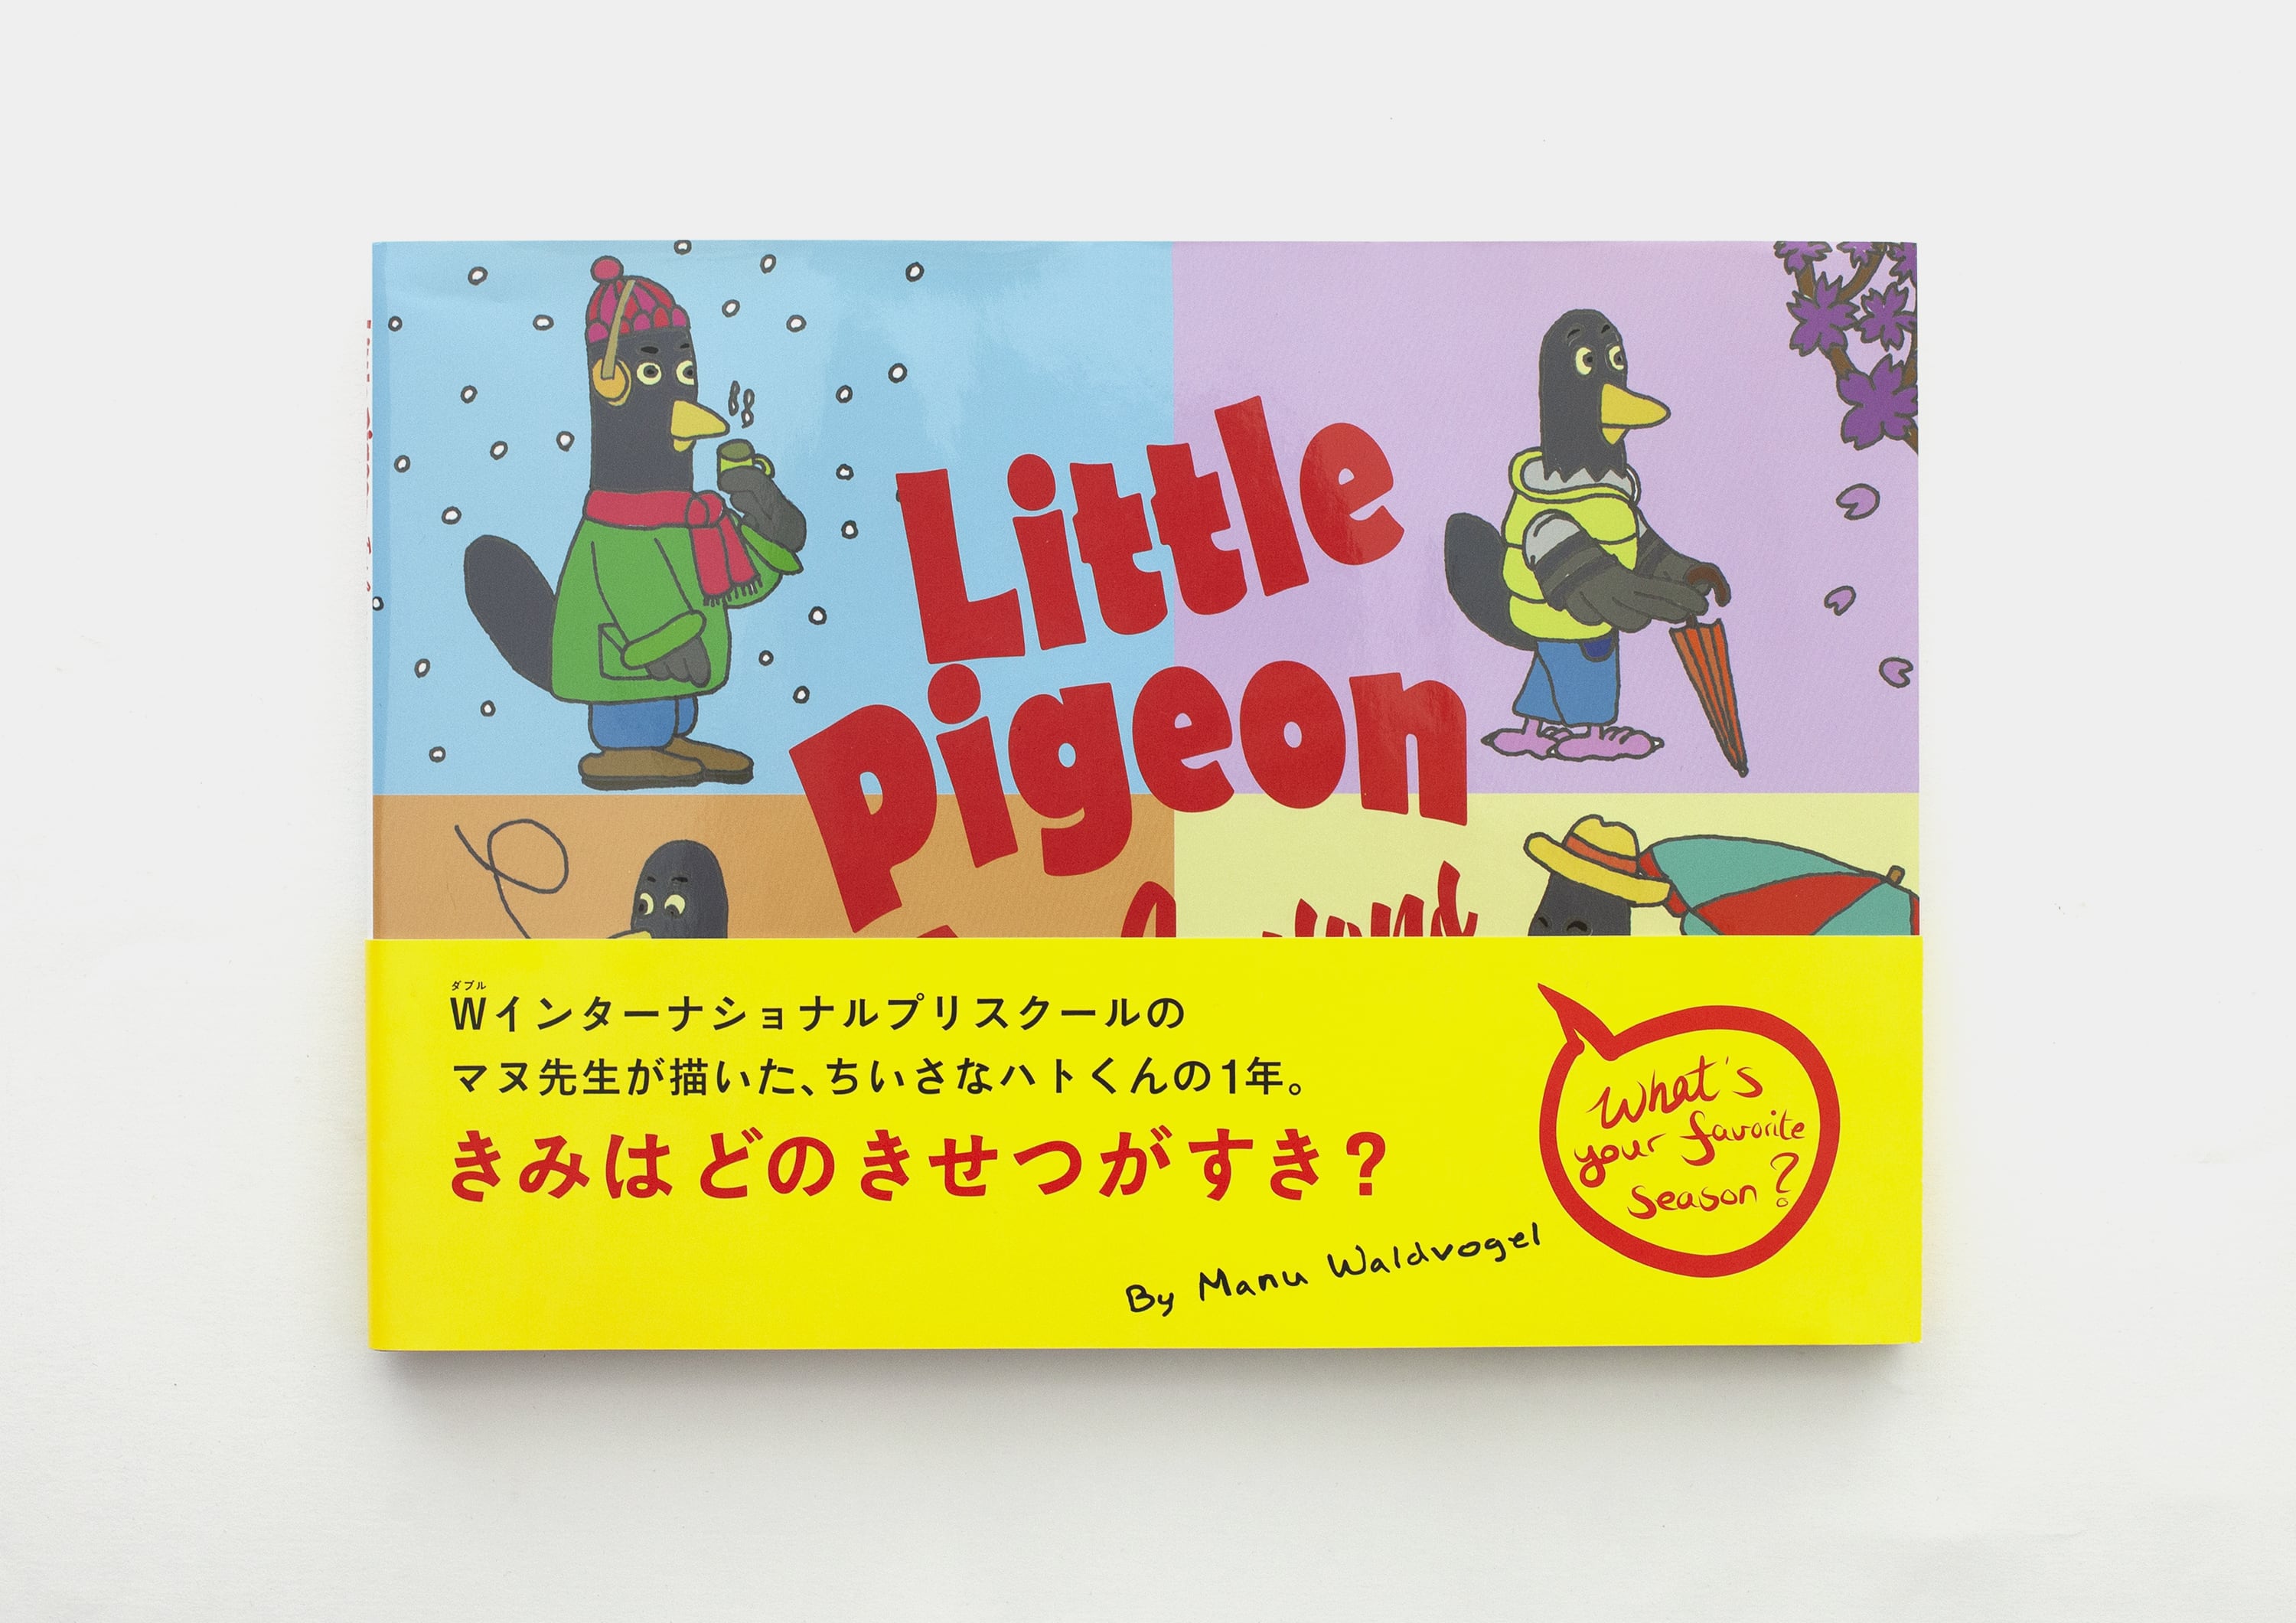 Little Pigeon / Manu Waldvogel / W books